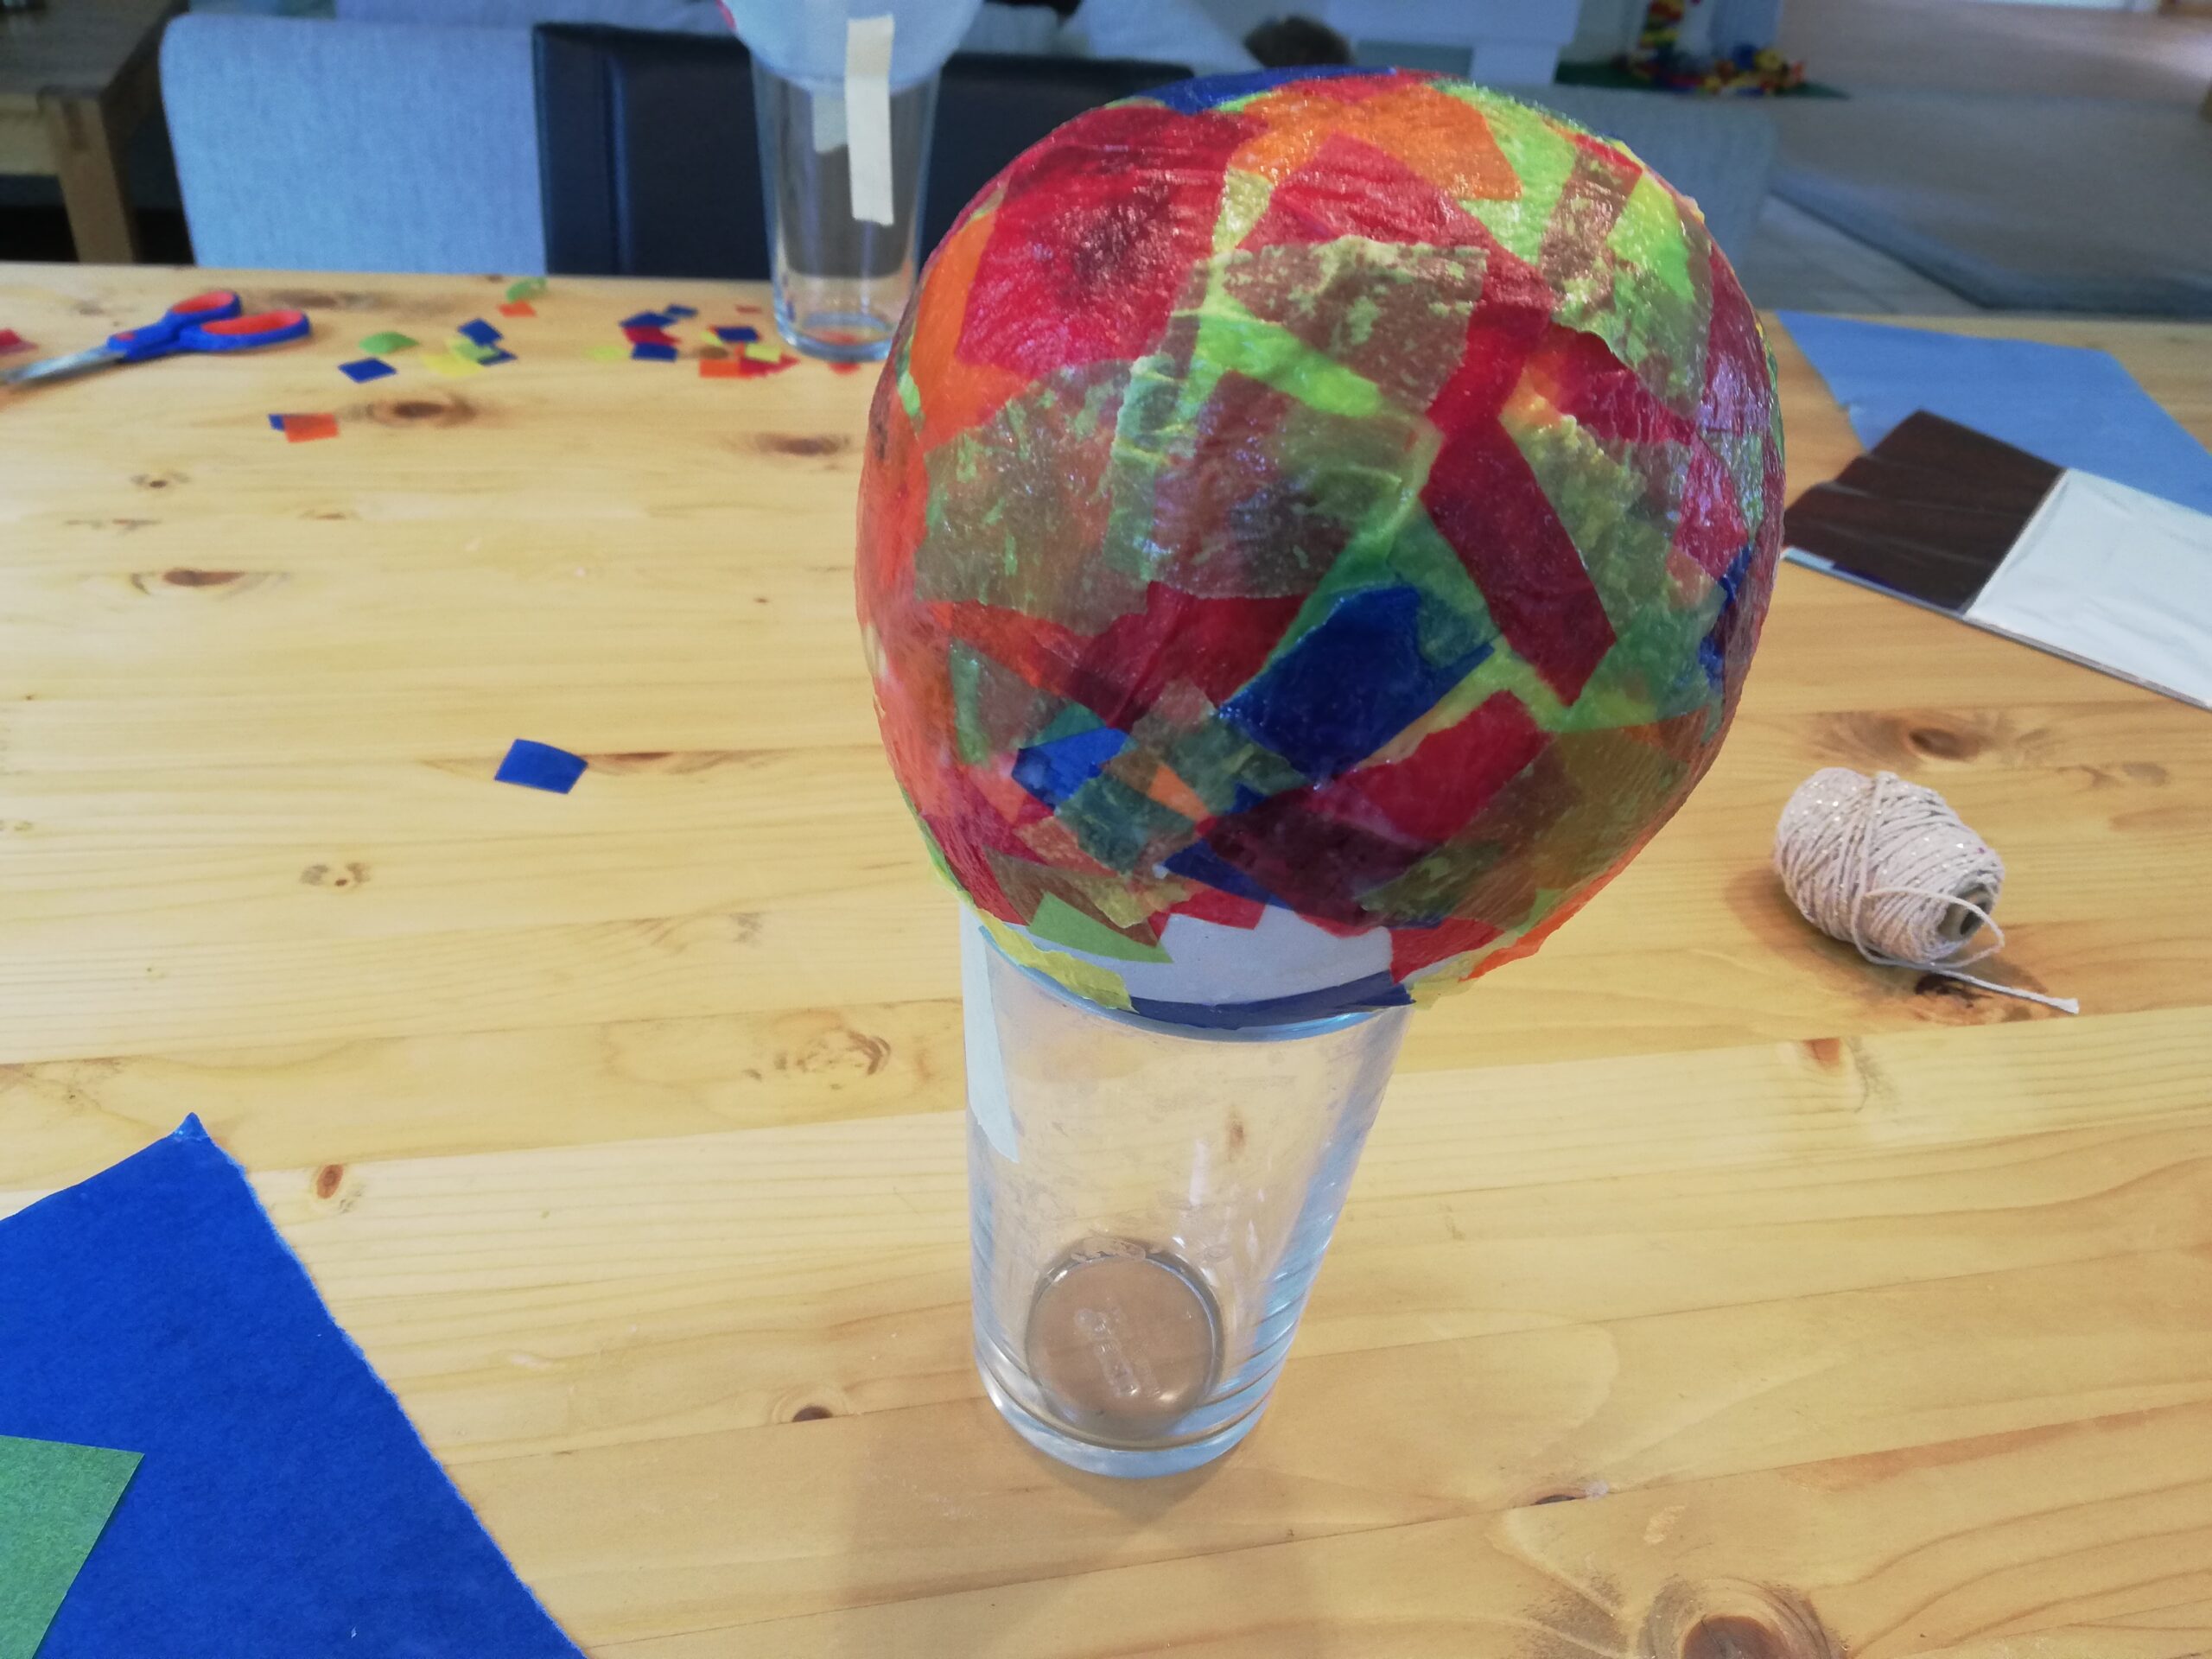 Bild zum Schritt 11 für das Bastel- und DIY-Abenteuer für Kinder: 'Sind mehrere Schichten Transparentpapier und Kleister auf den Luftballon geklebt,...'